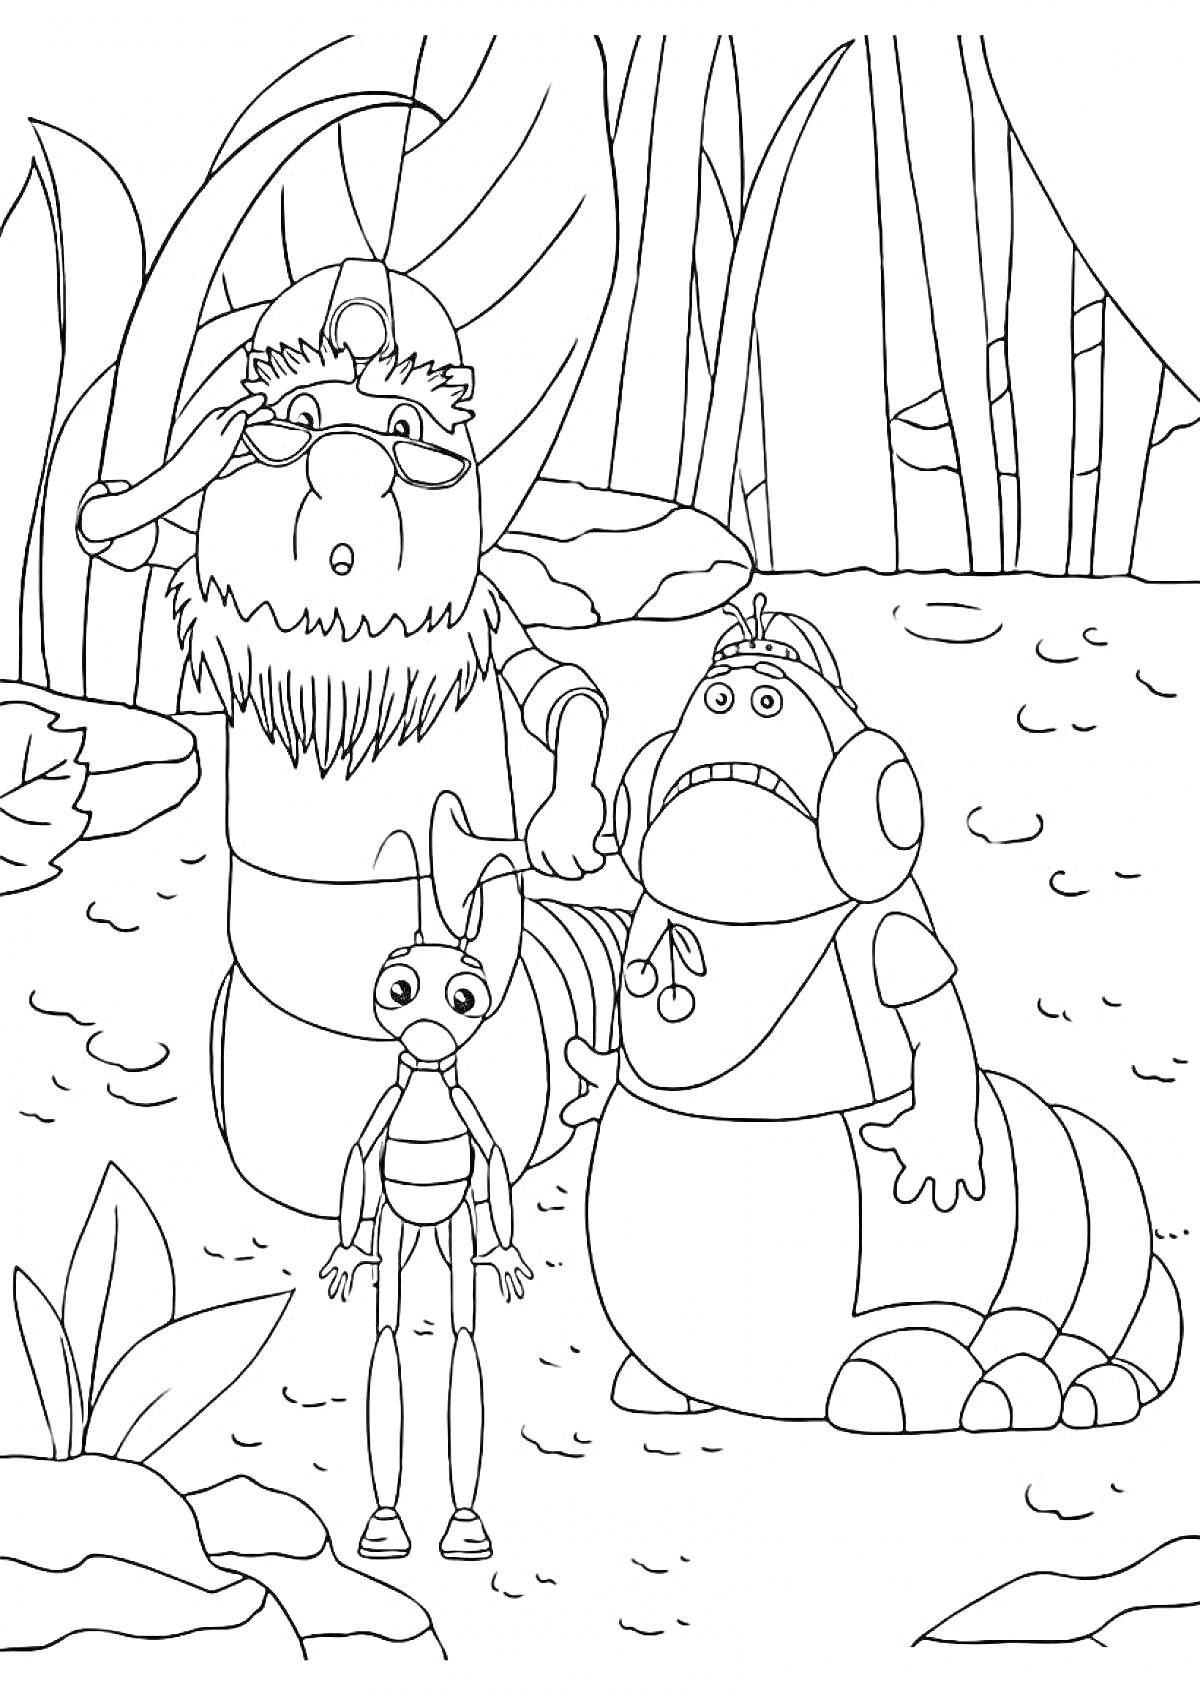 Раскраска Лунтик и его друзья - лесные жители на прогулке (три персонажа, растения)